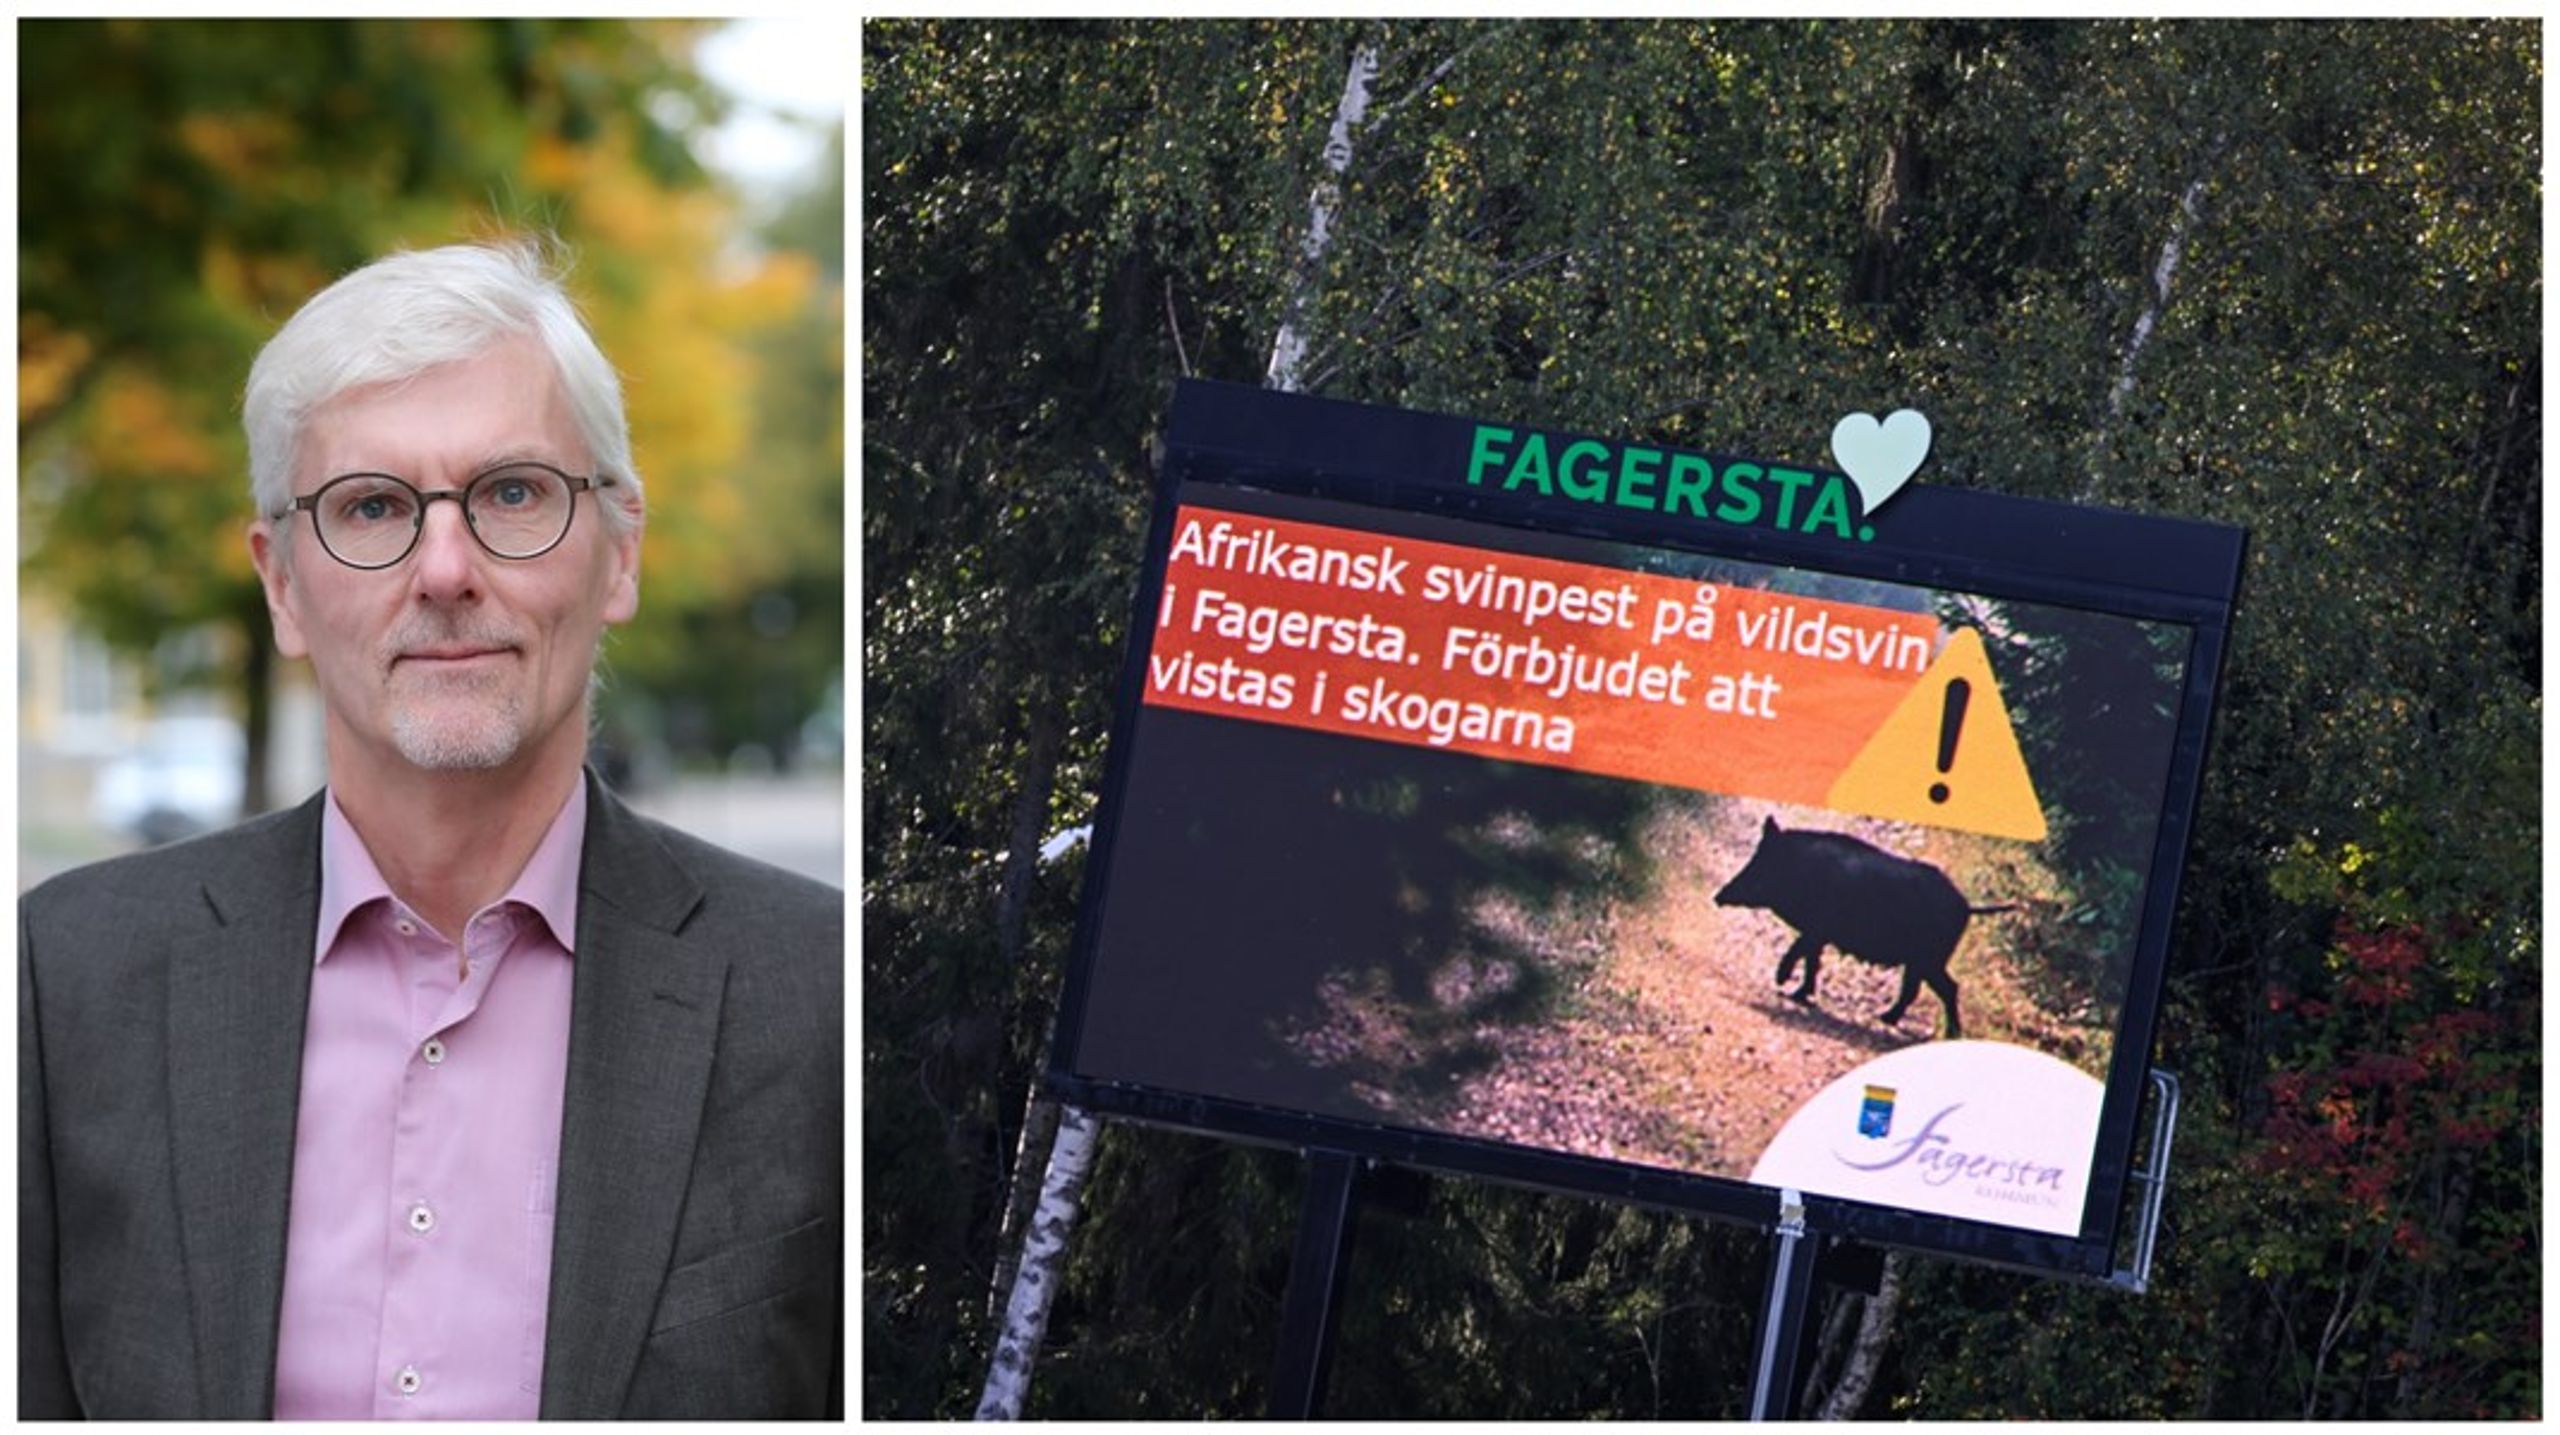 Jordbruksverkets avgående överdirektör ser även att efterträdaren får kämpa vidare i arbetet med att förebygga fler utbrott av allvarliga djursjukdomar som svinpestutbrottet i Fagersta. <br>